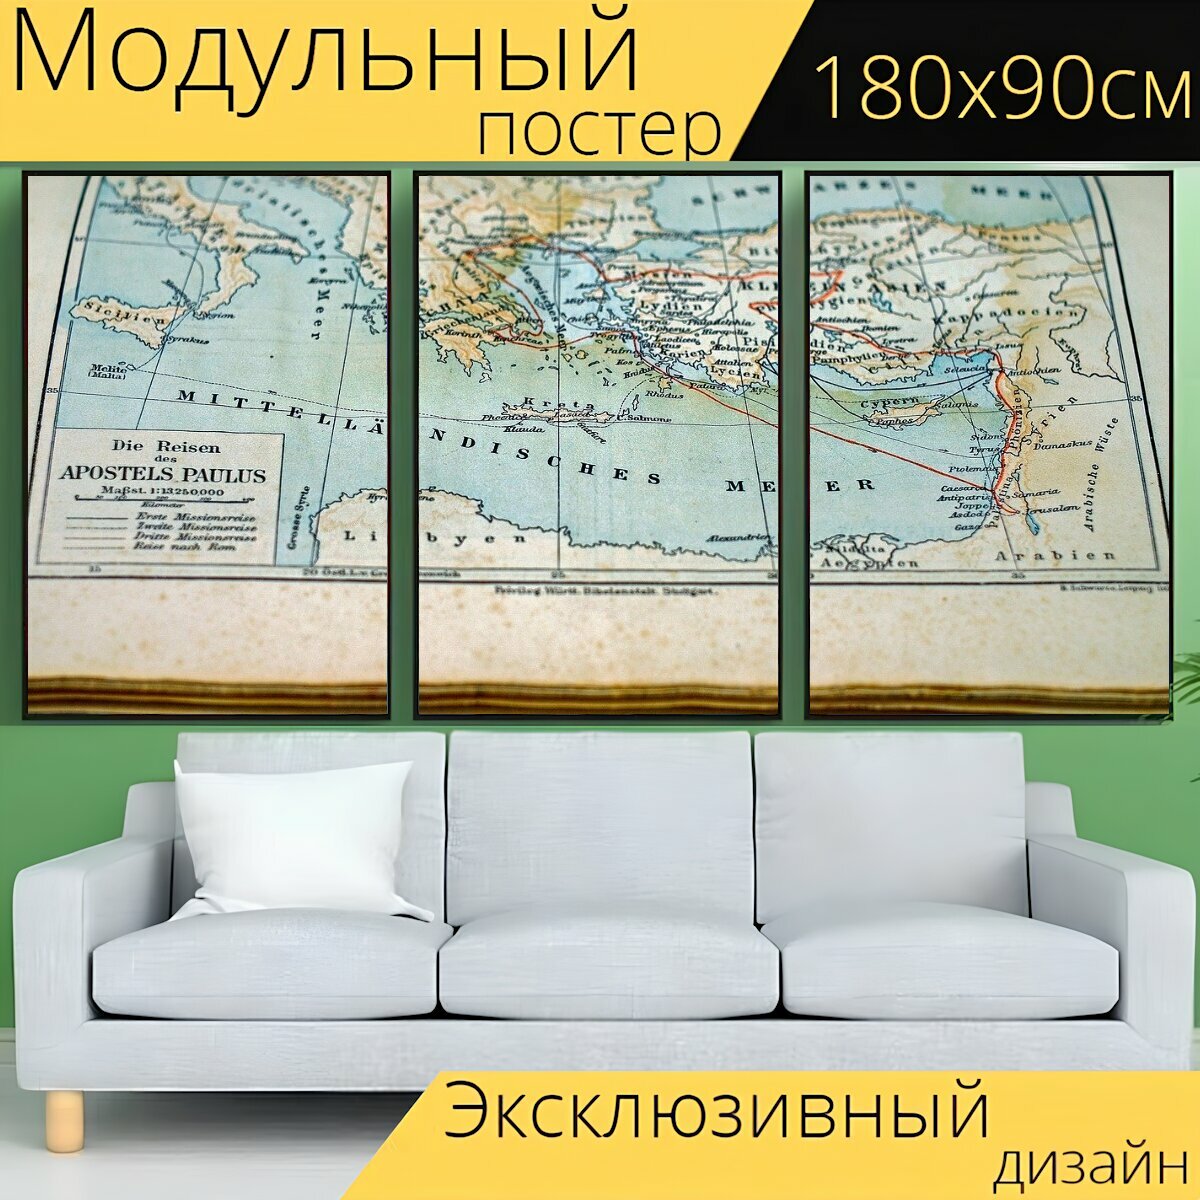 Модульный постер "Карта, карта мира, старый" 180 x 90 см. для интерьера